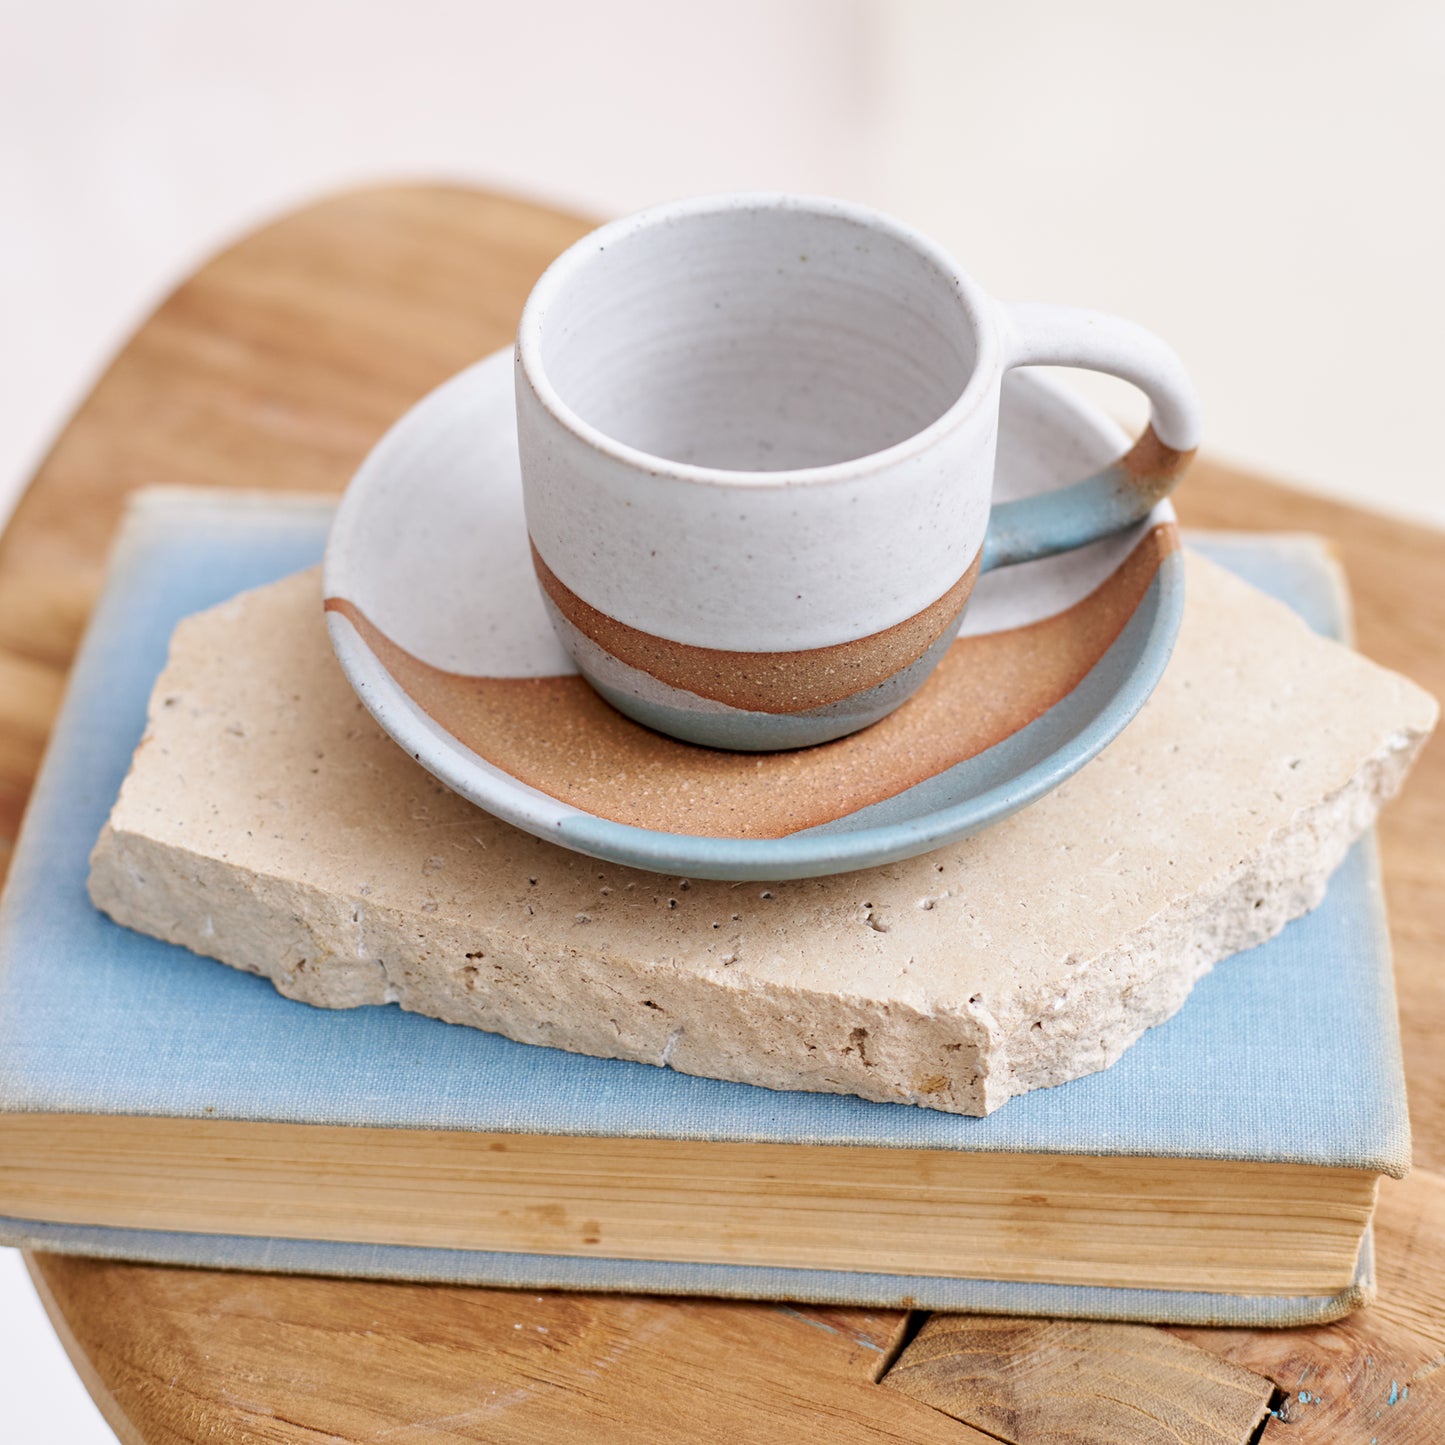 Tidal Handmade Ceramic Espresso Mug - Green and Grey